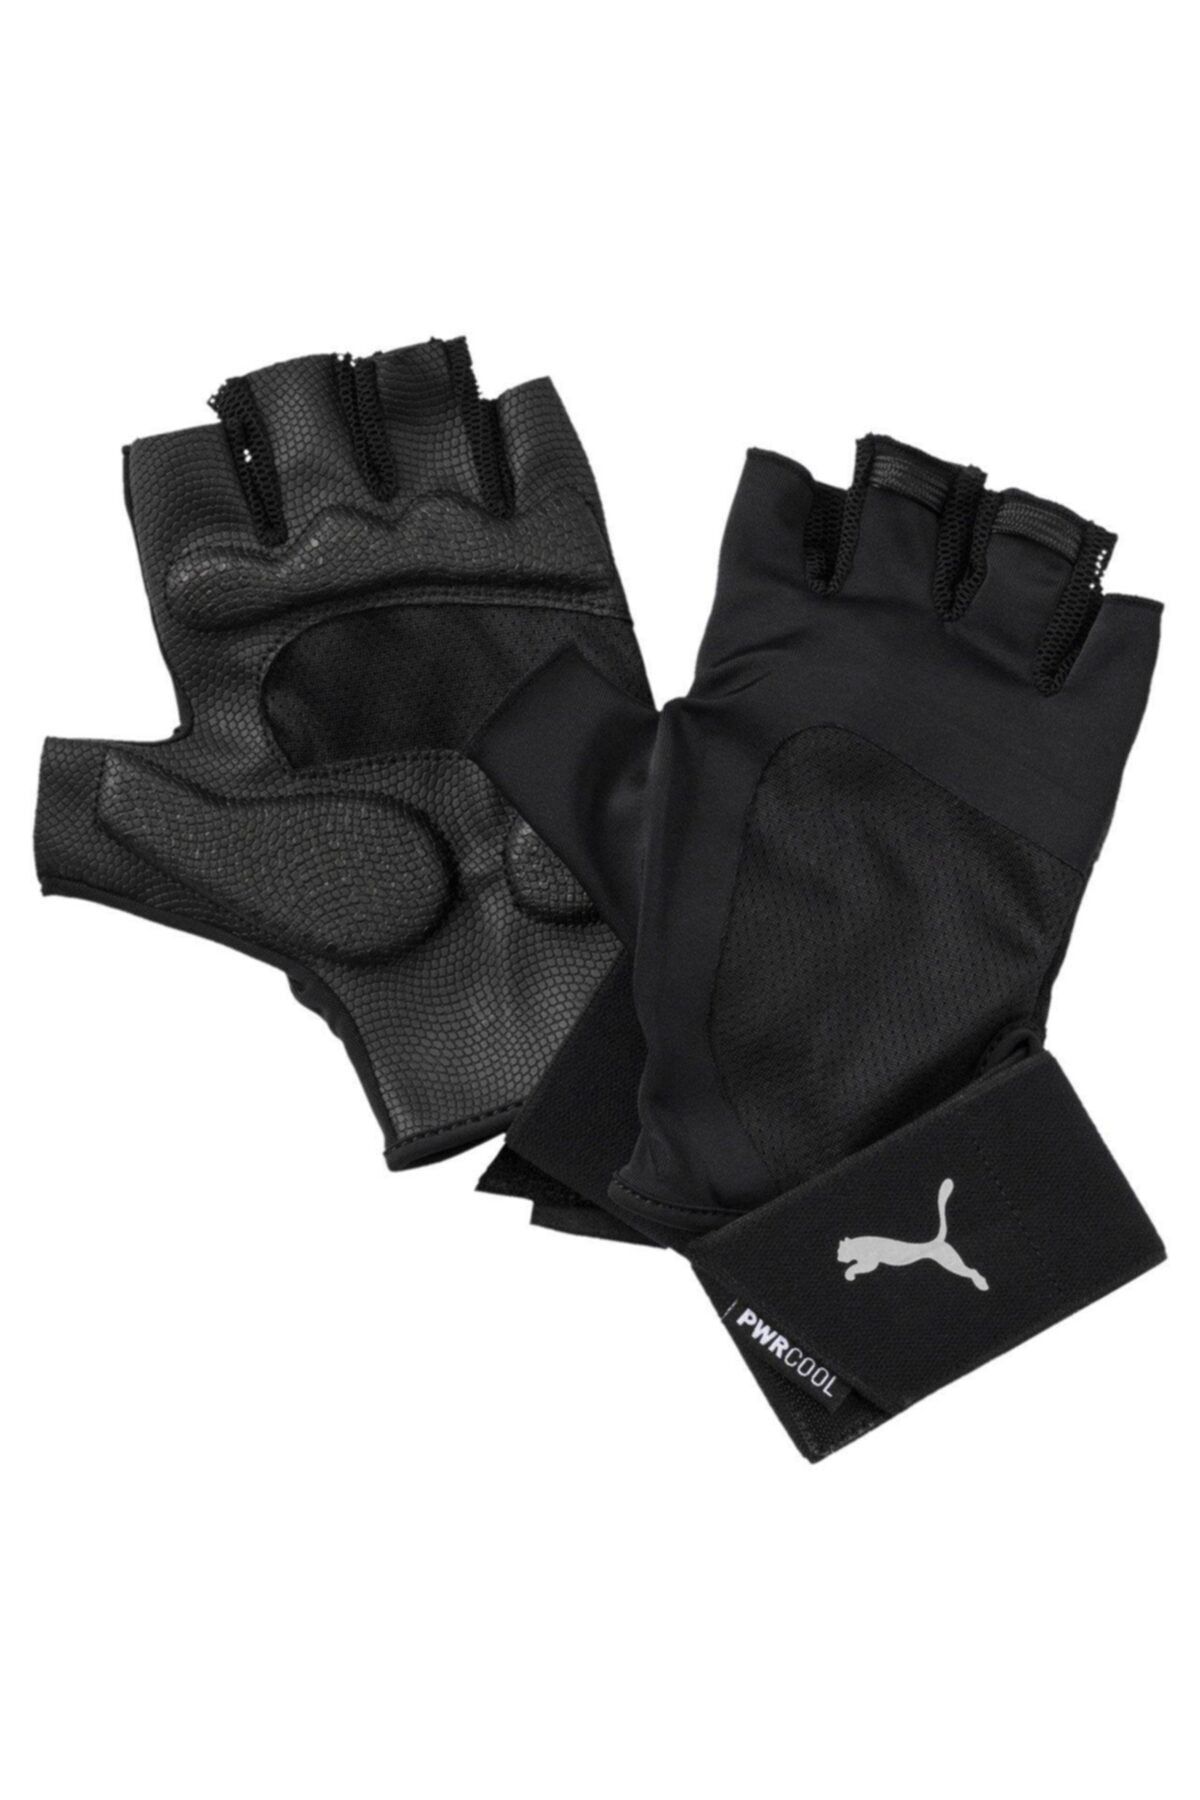 Puma TR Ess Gloves Premium